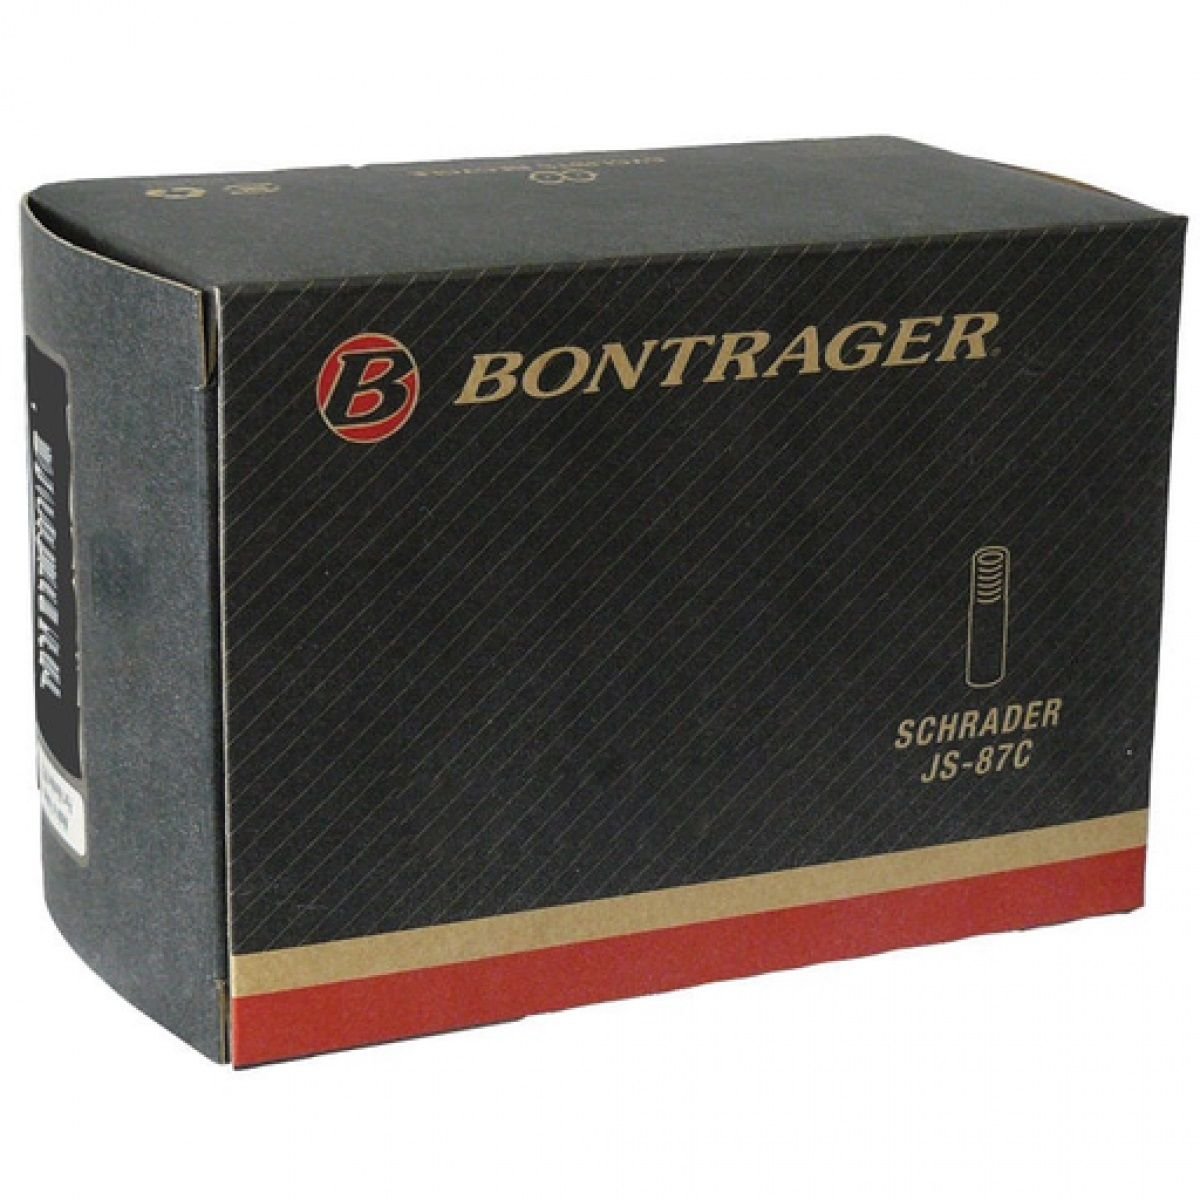 Камера велосипедная Bontrager Standard, 12 1/2X2 1/4, SV, TCG-66943